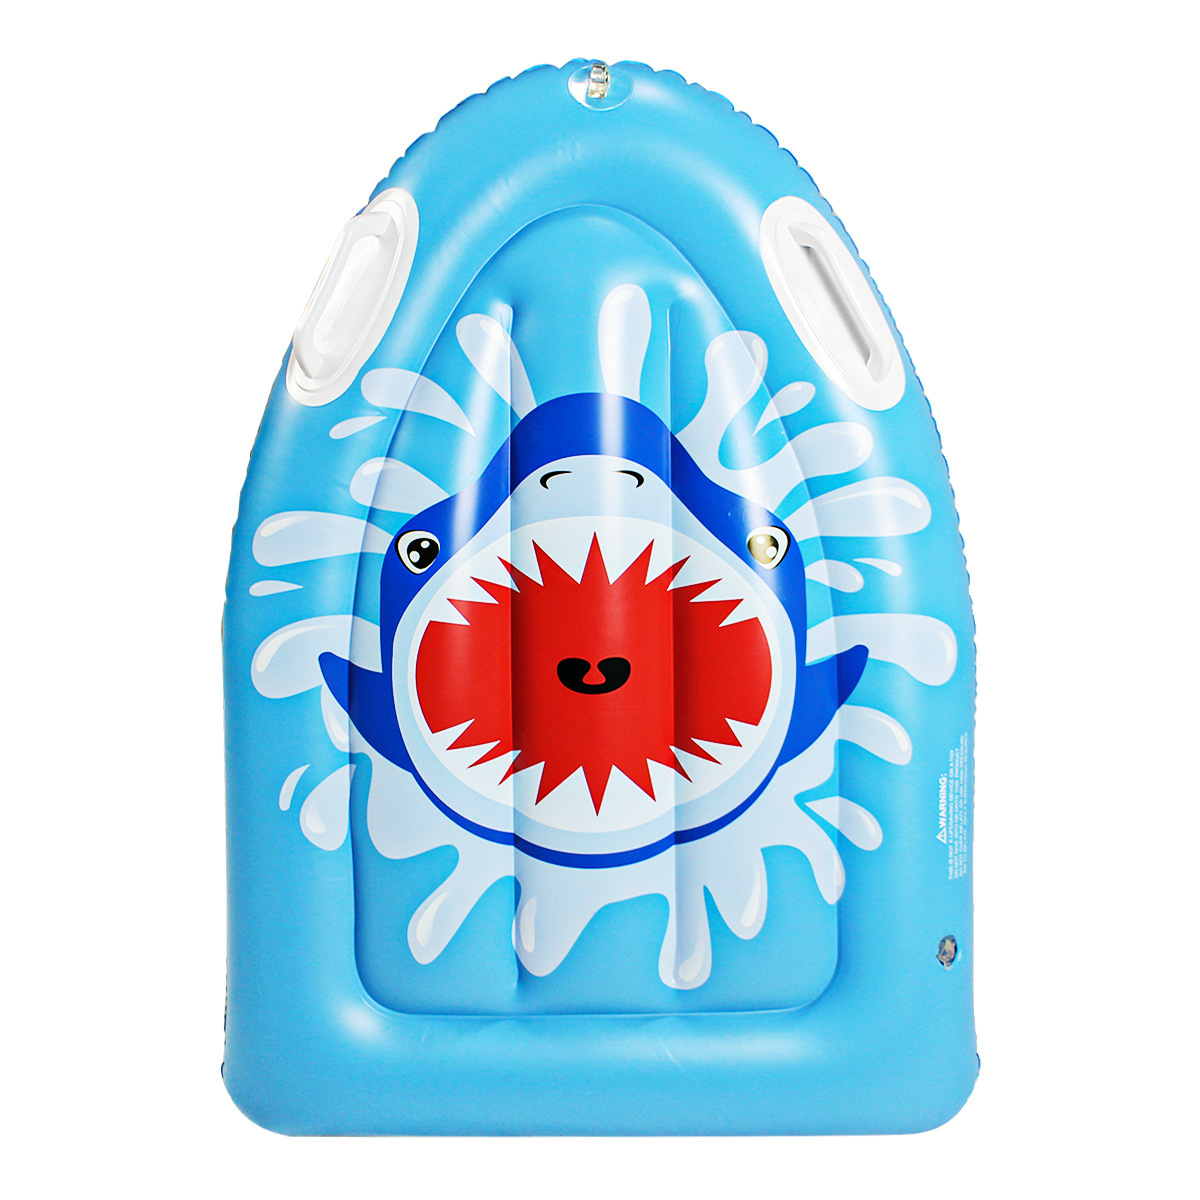 2021夏季新款pvc充气儿童浮排水上玩具鲨鱼浮床海上冲浪板现货|ru